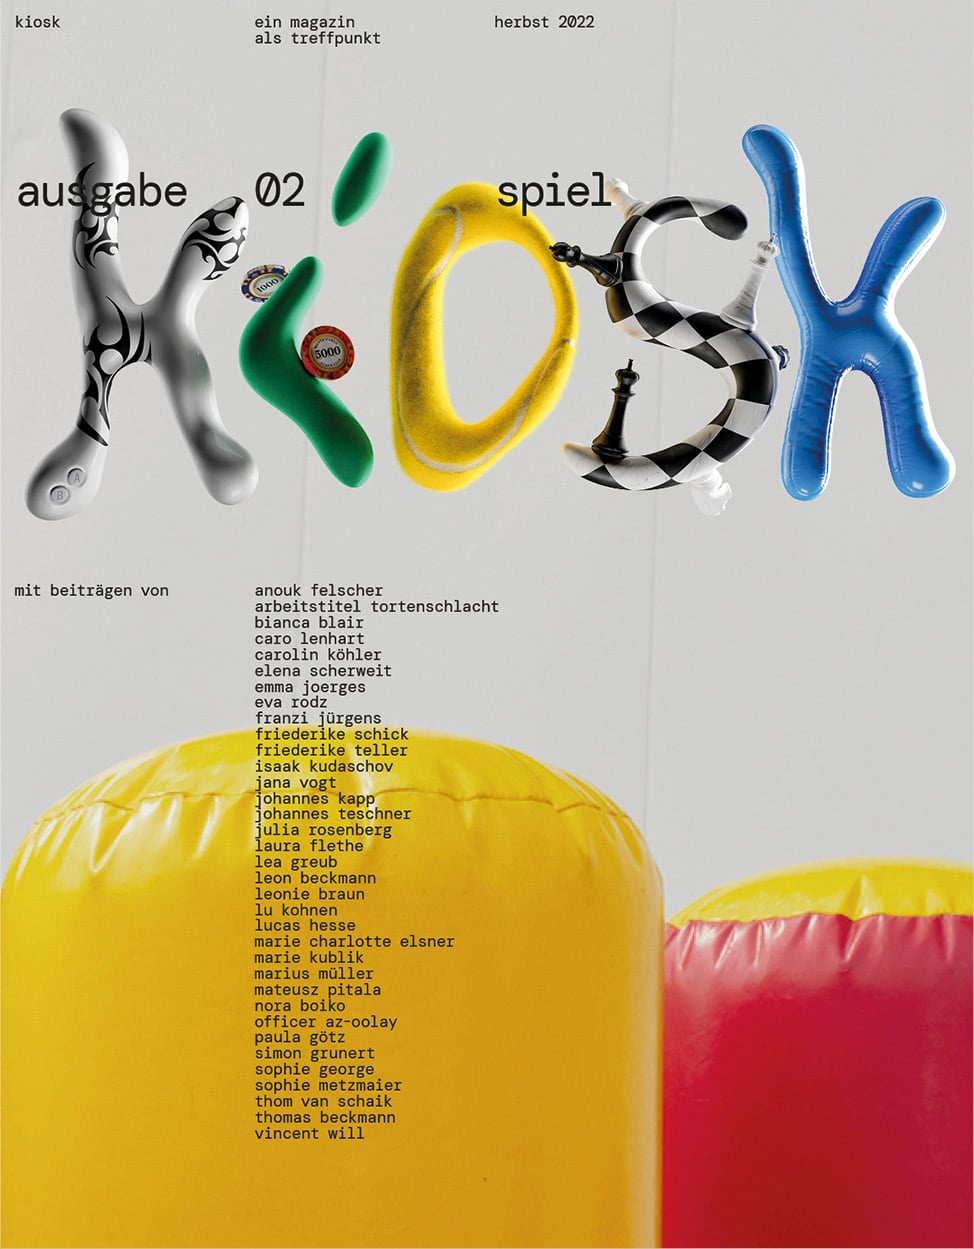 Das knallbunte cover des kioskmagazins mit der 3d logoschrift in unterschiedlichen Texturen und färben